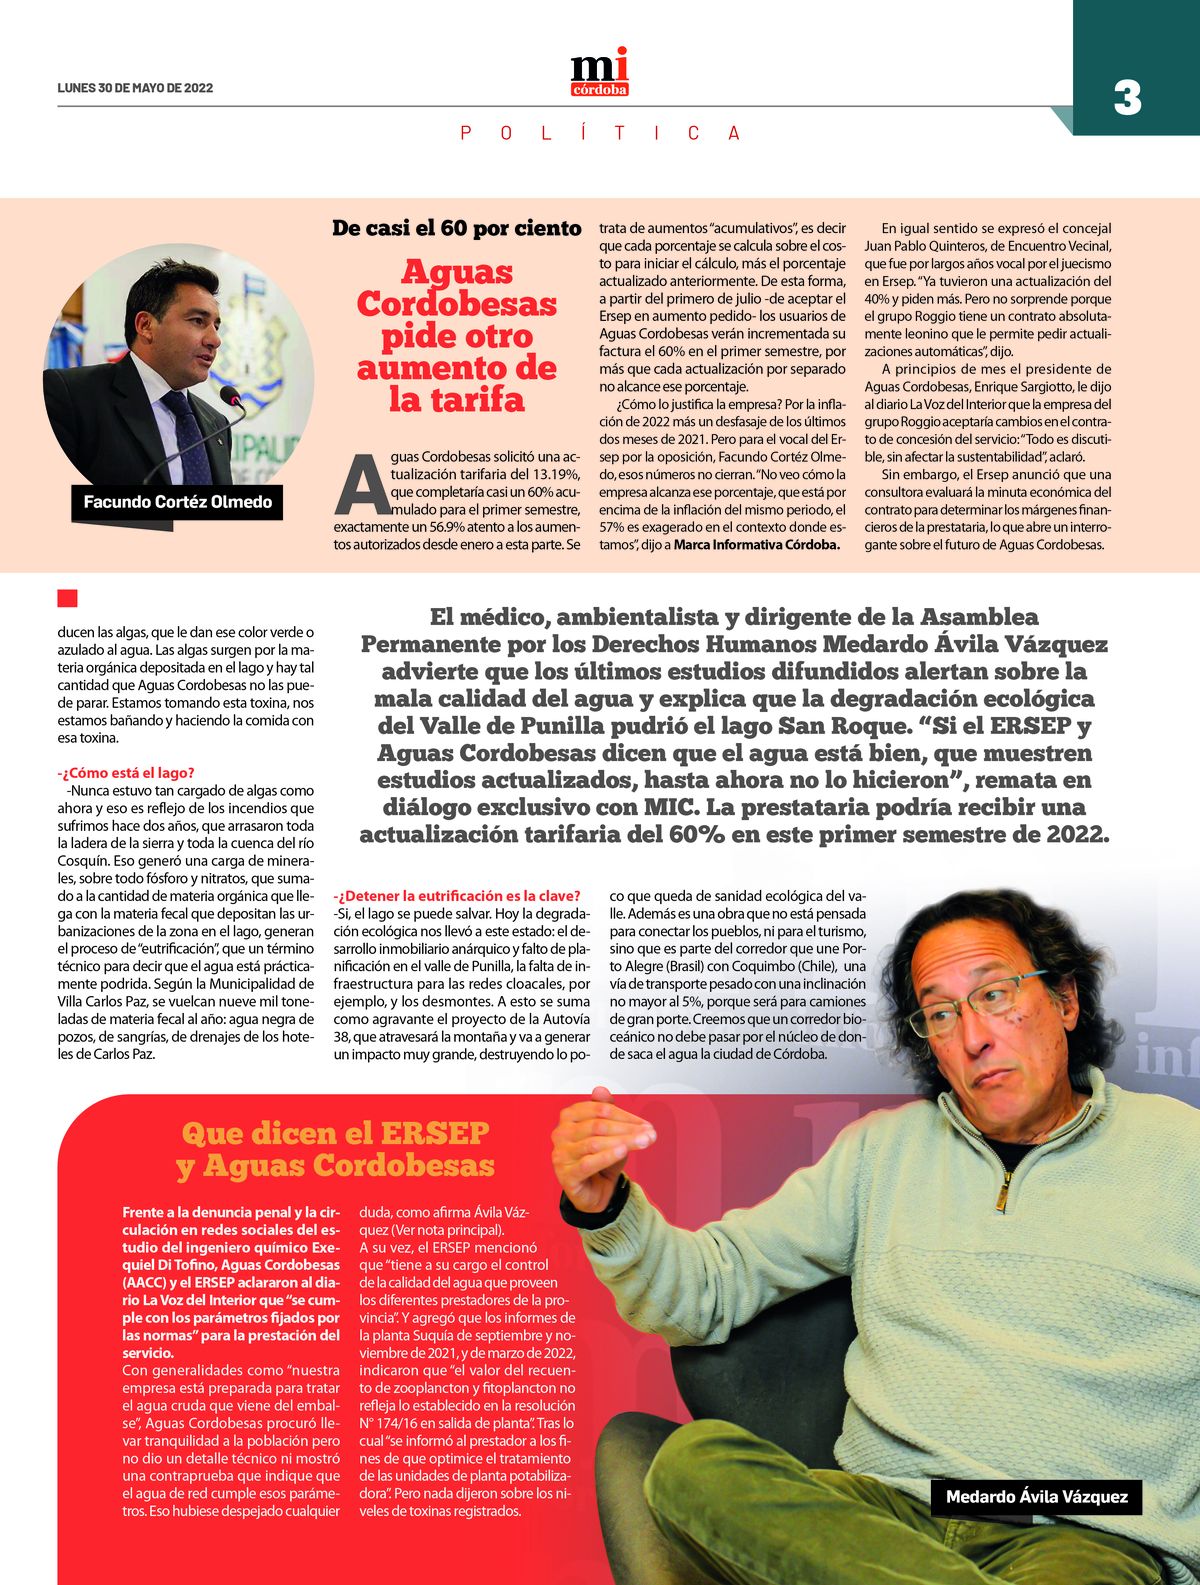 Ya circula la 11ra edición del semanario Marca Informativa Córdoba